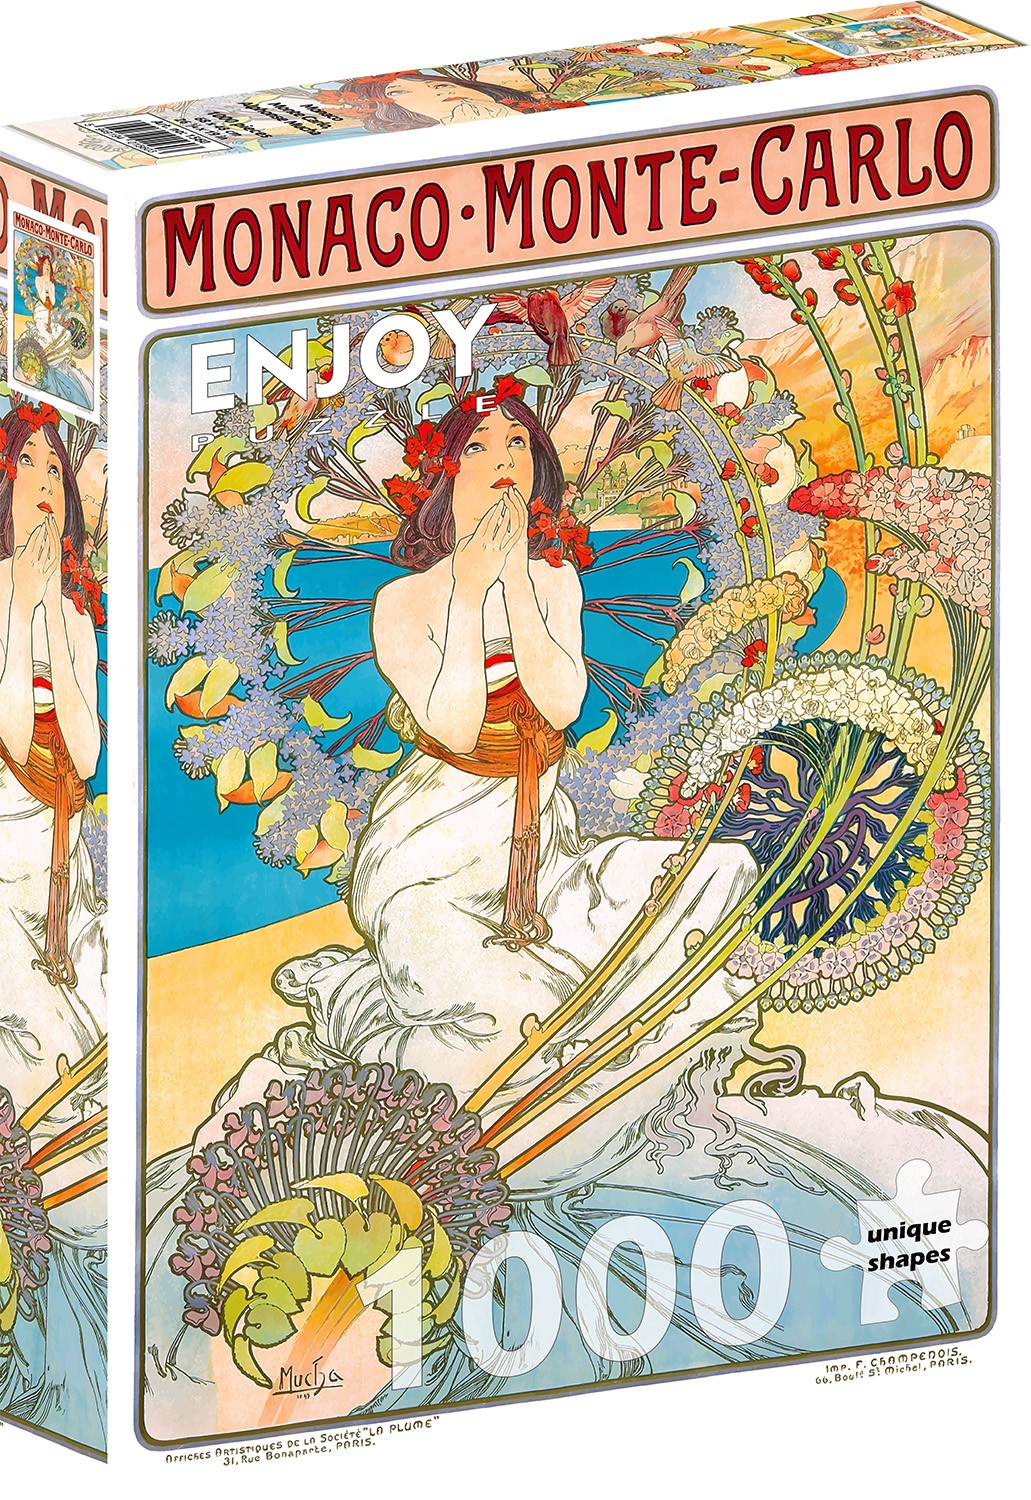 1000 Pieces Jigsaw Puzzle - Alfons Mucha: Monaco Monte Carlo